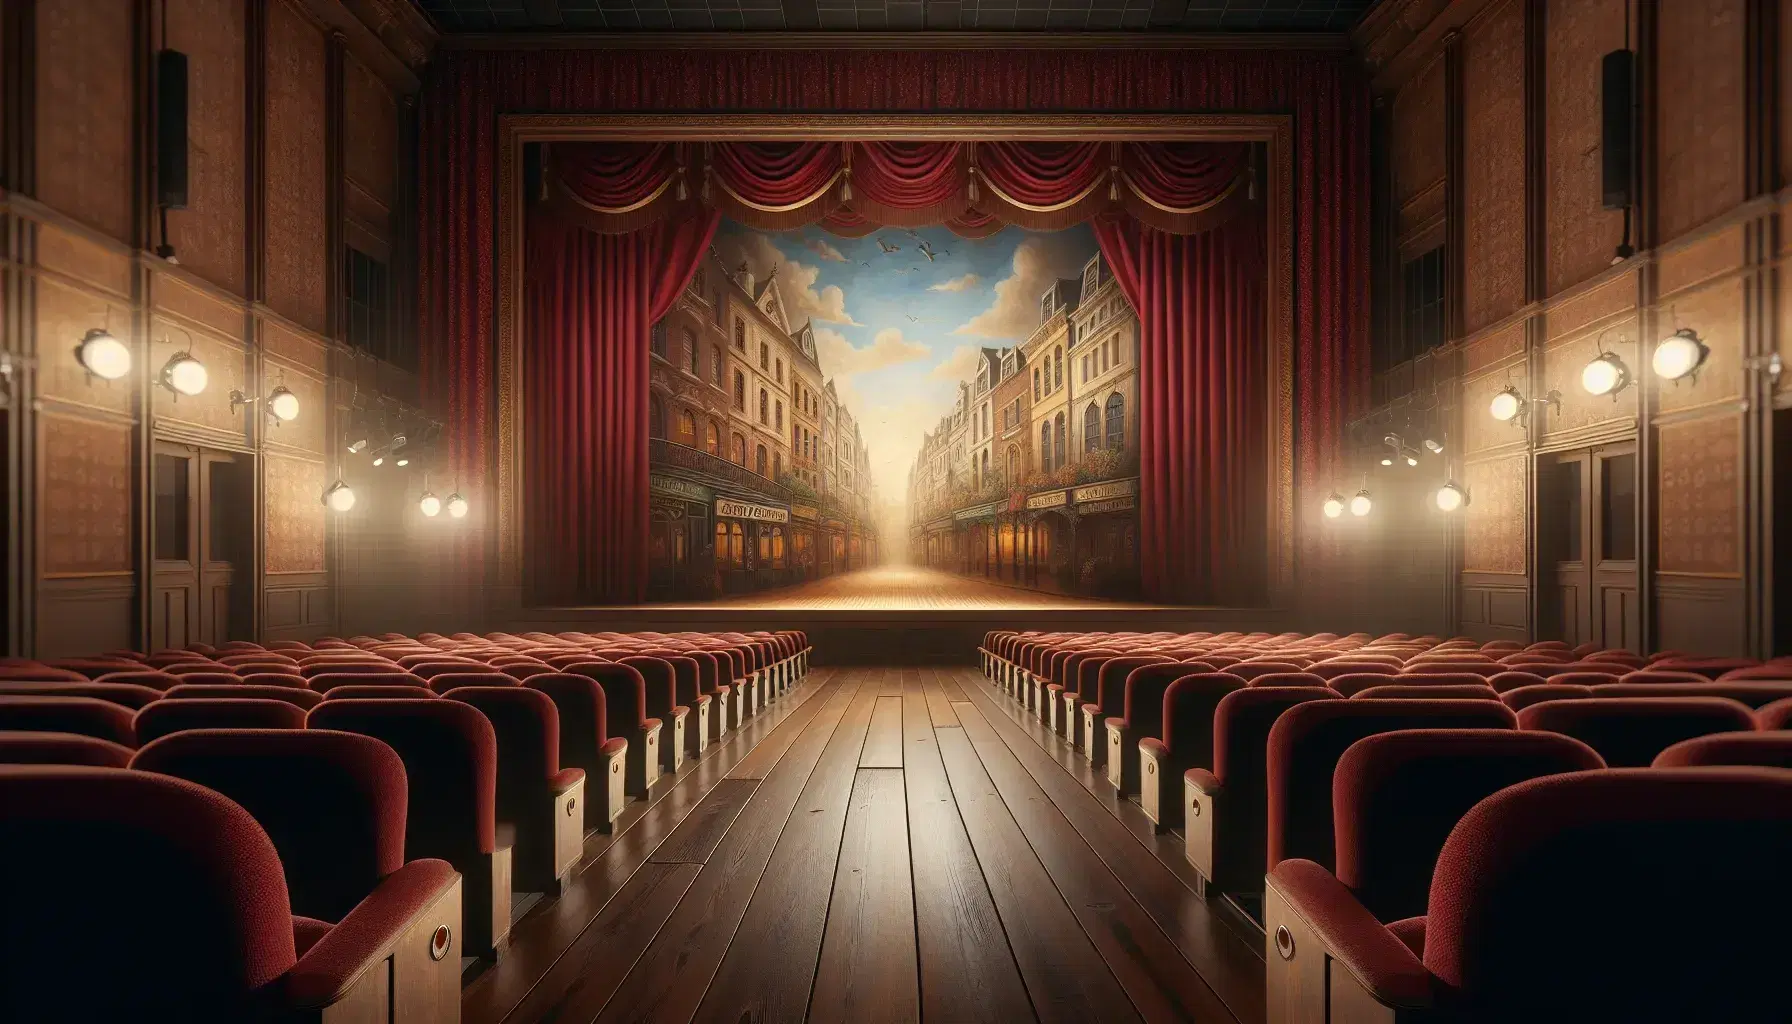 Escenario teatral vacío con asientos de terciopelo rojo, cortinas borgoña y telón pintado de calle vintage bajo luces cálidas, esperando una función.